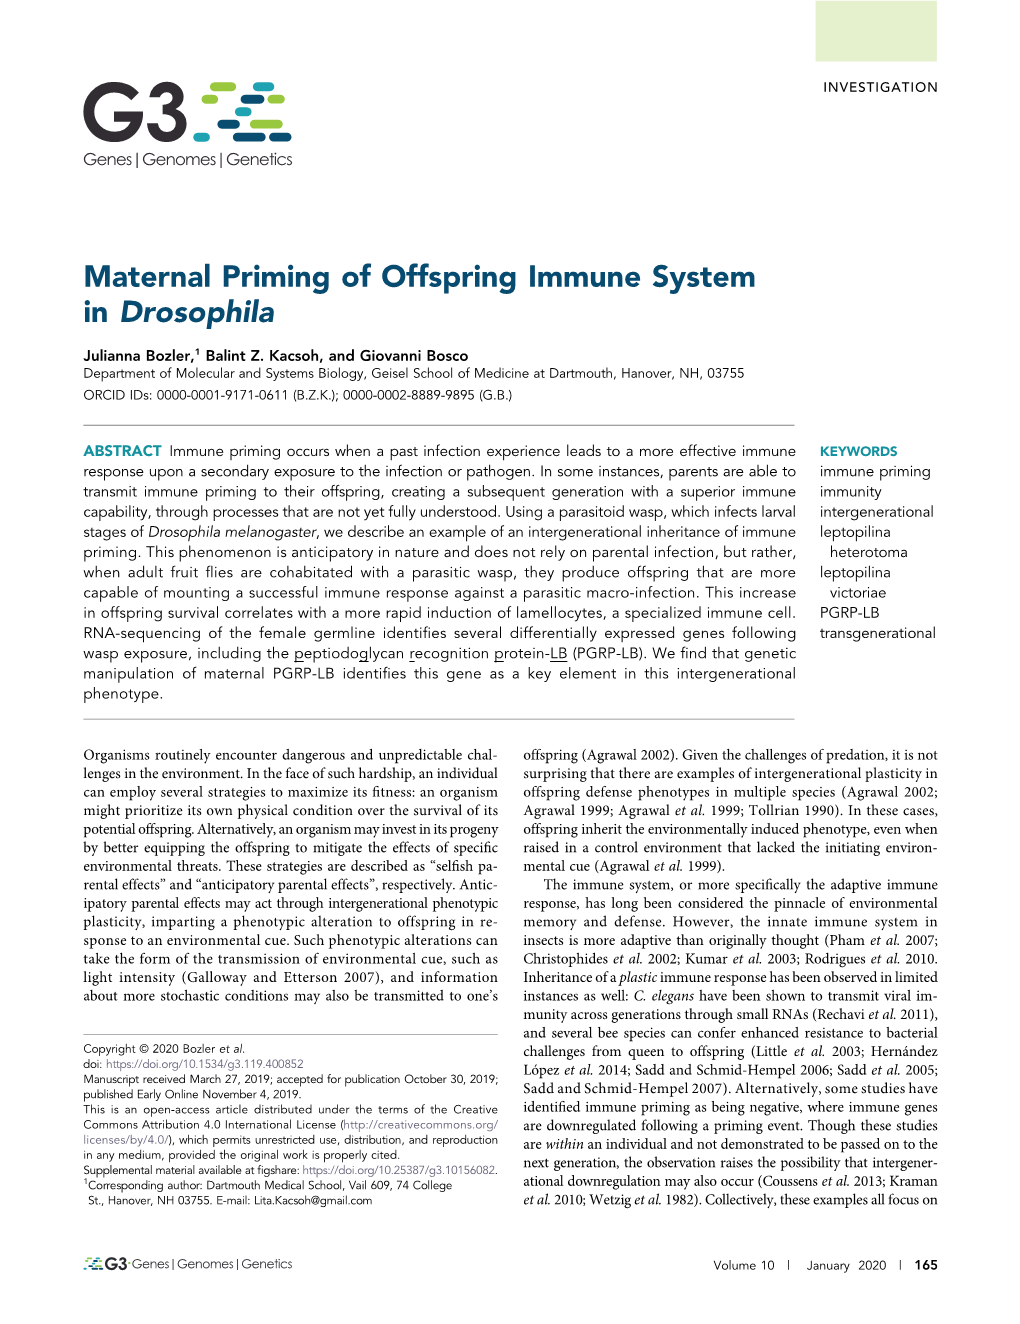 Maternal Priming of Offspring Immune System in Drosophila